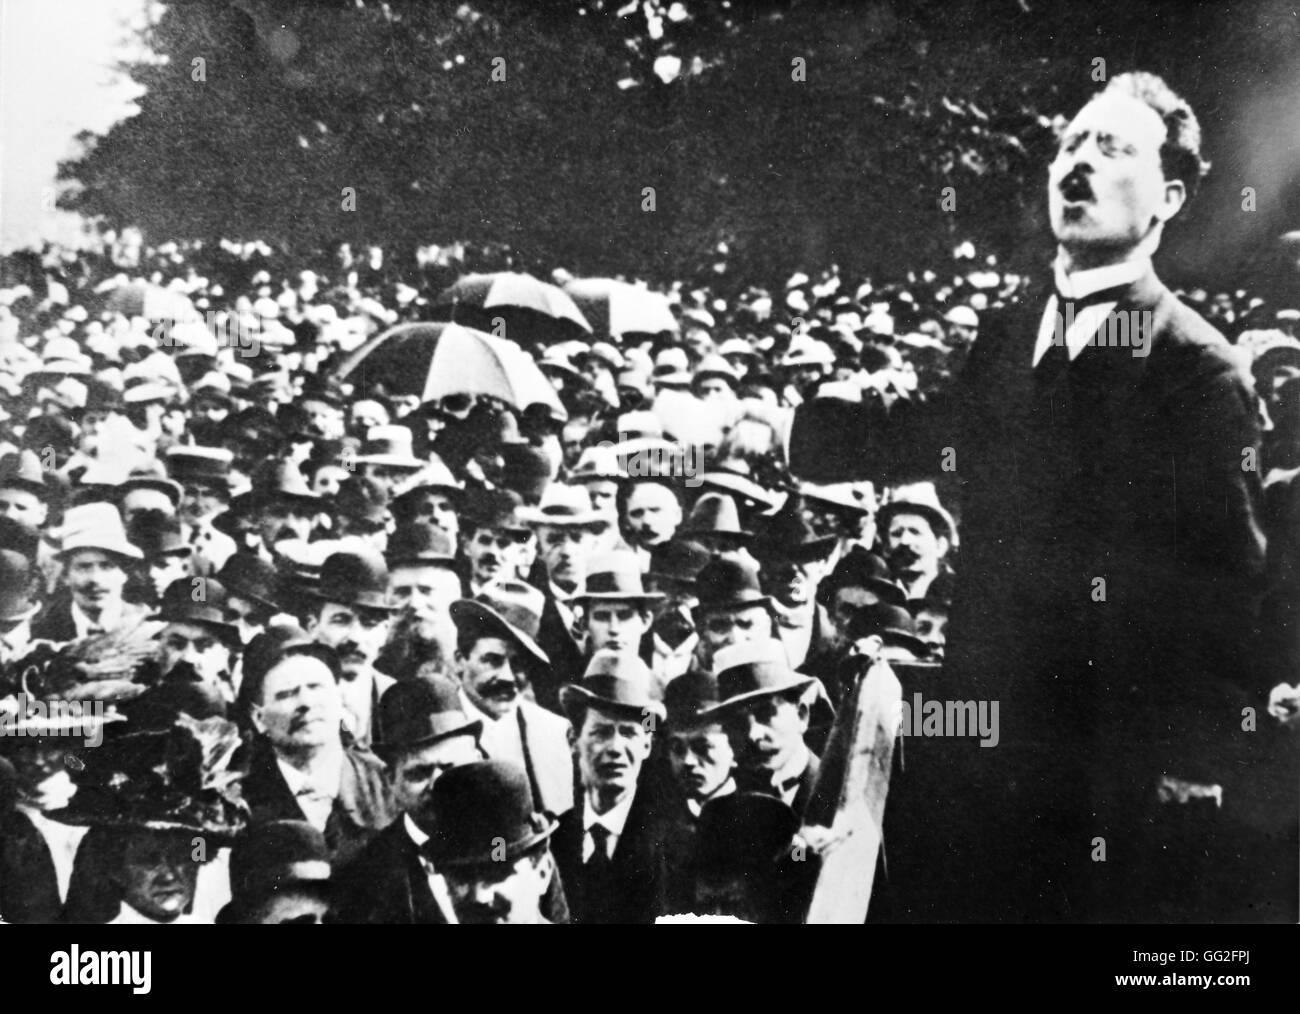 La prima guerra mondiale. Karl Liebknecht (1871-1919) risolve una folla il 9 novembre 1918. Tedesco Comunista Rivoluzionaria, membro del Partito socialdemocratico ha di Germania (SPD). Foto Stock